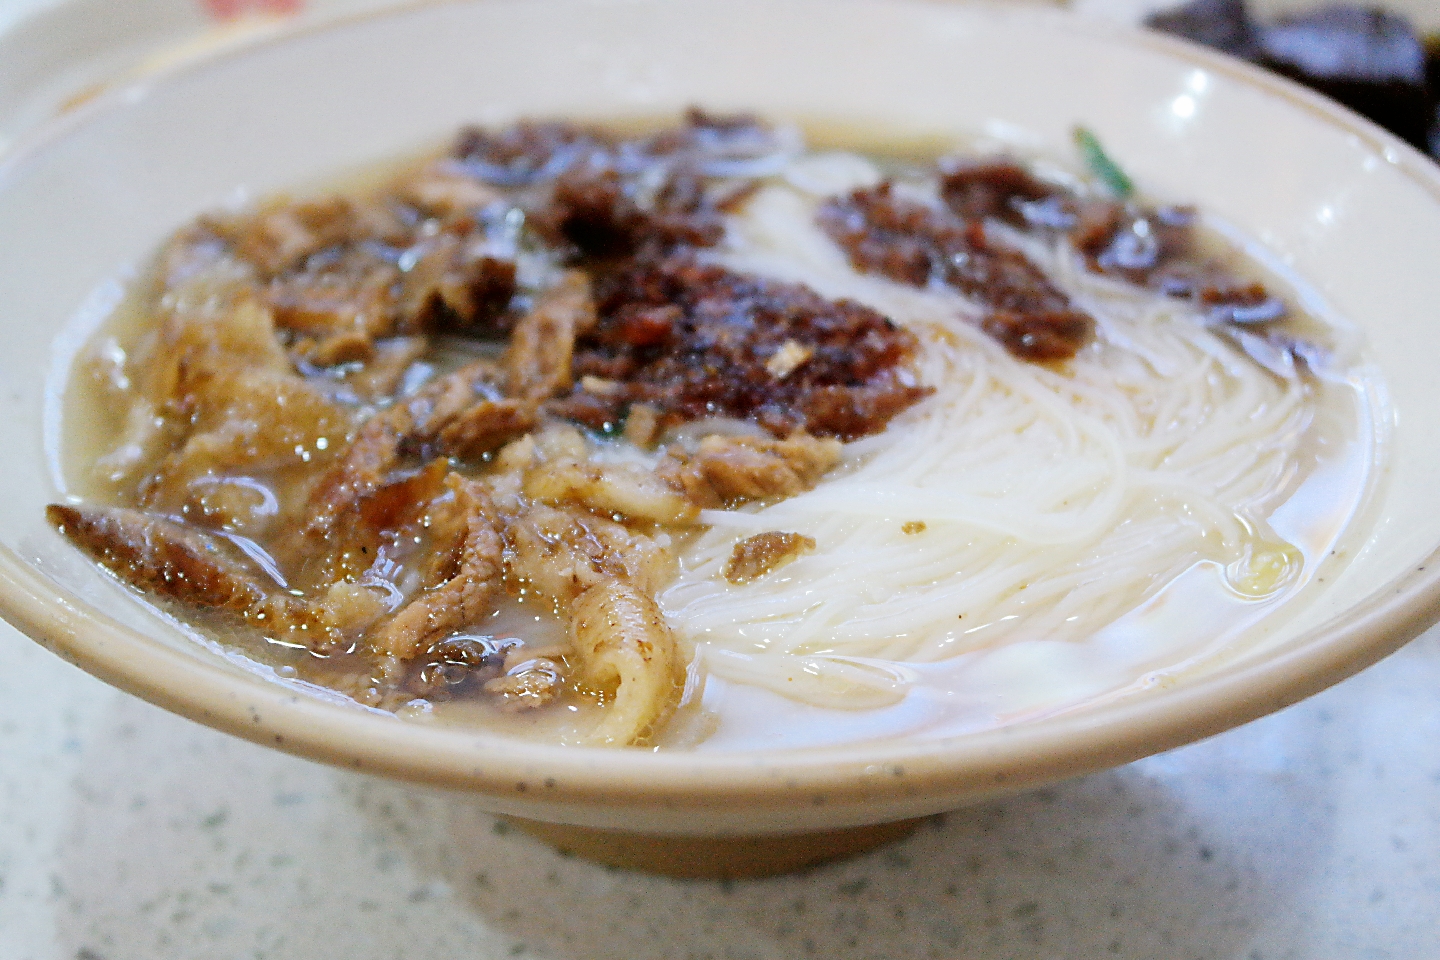 清汤粉:龙岩人最喜欢的美食,咸肉,牛油渣……很特色!